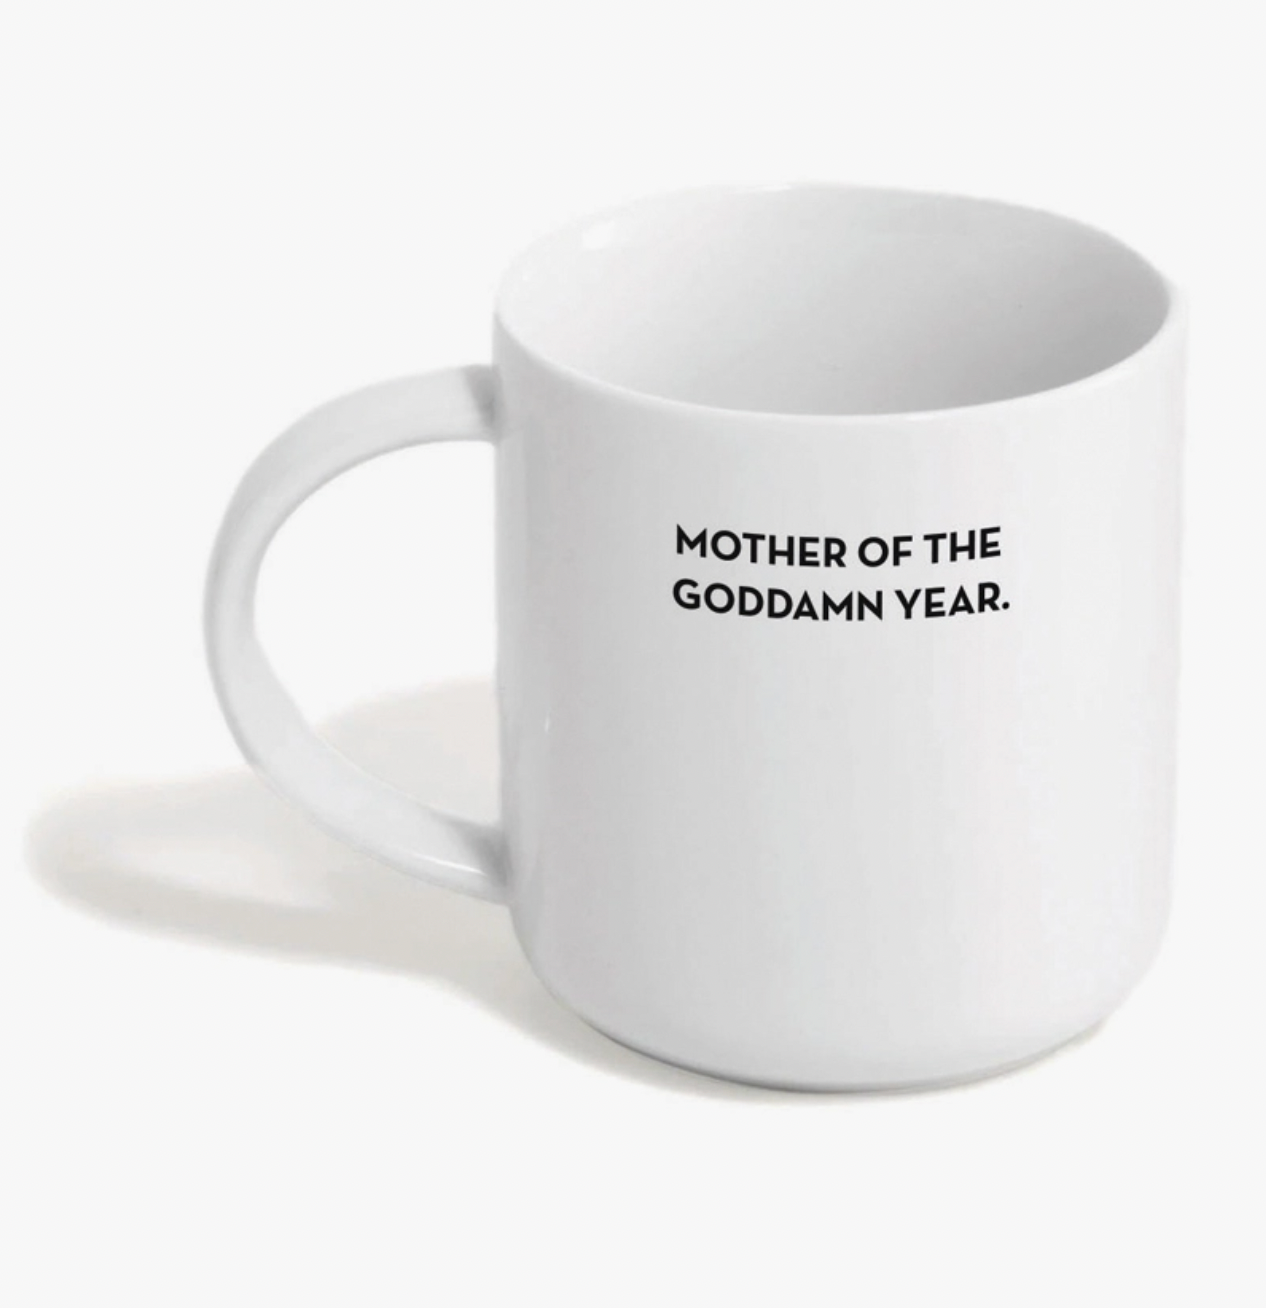 Mother of the Goddamn Year Mug